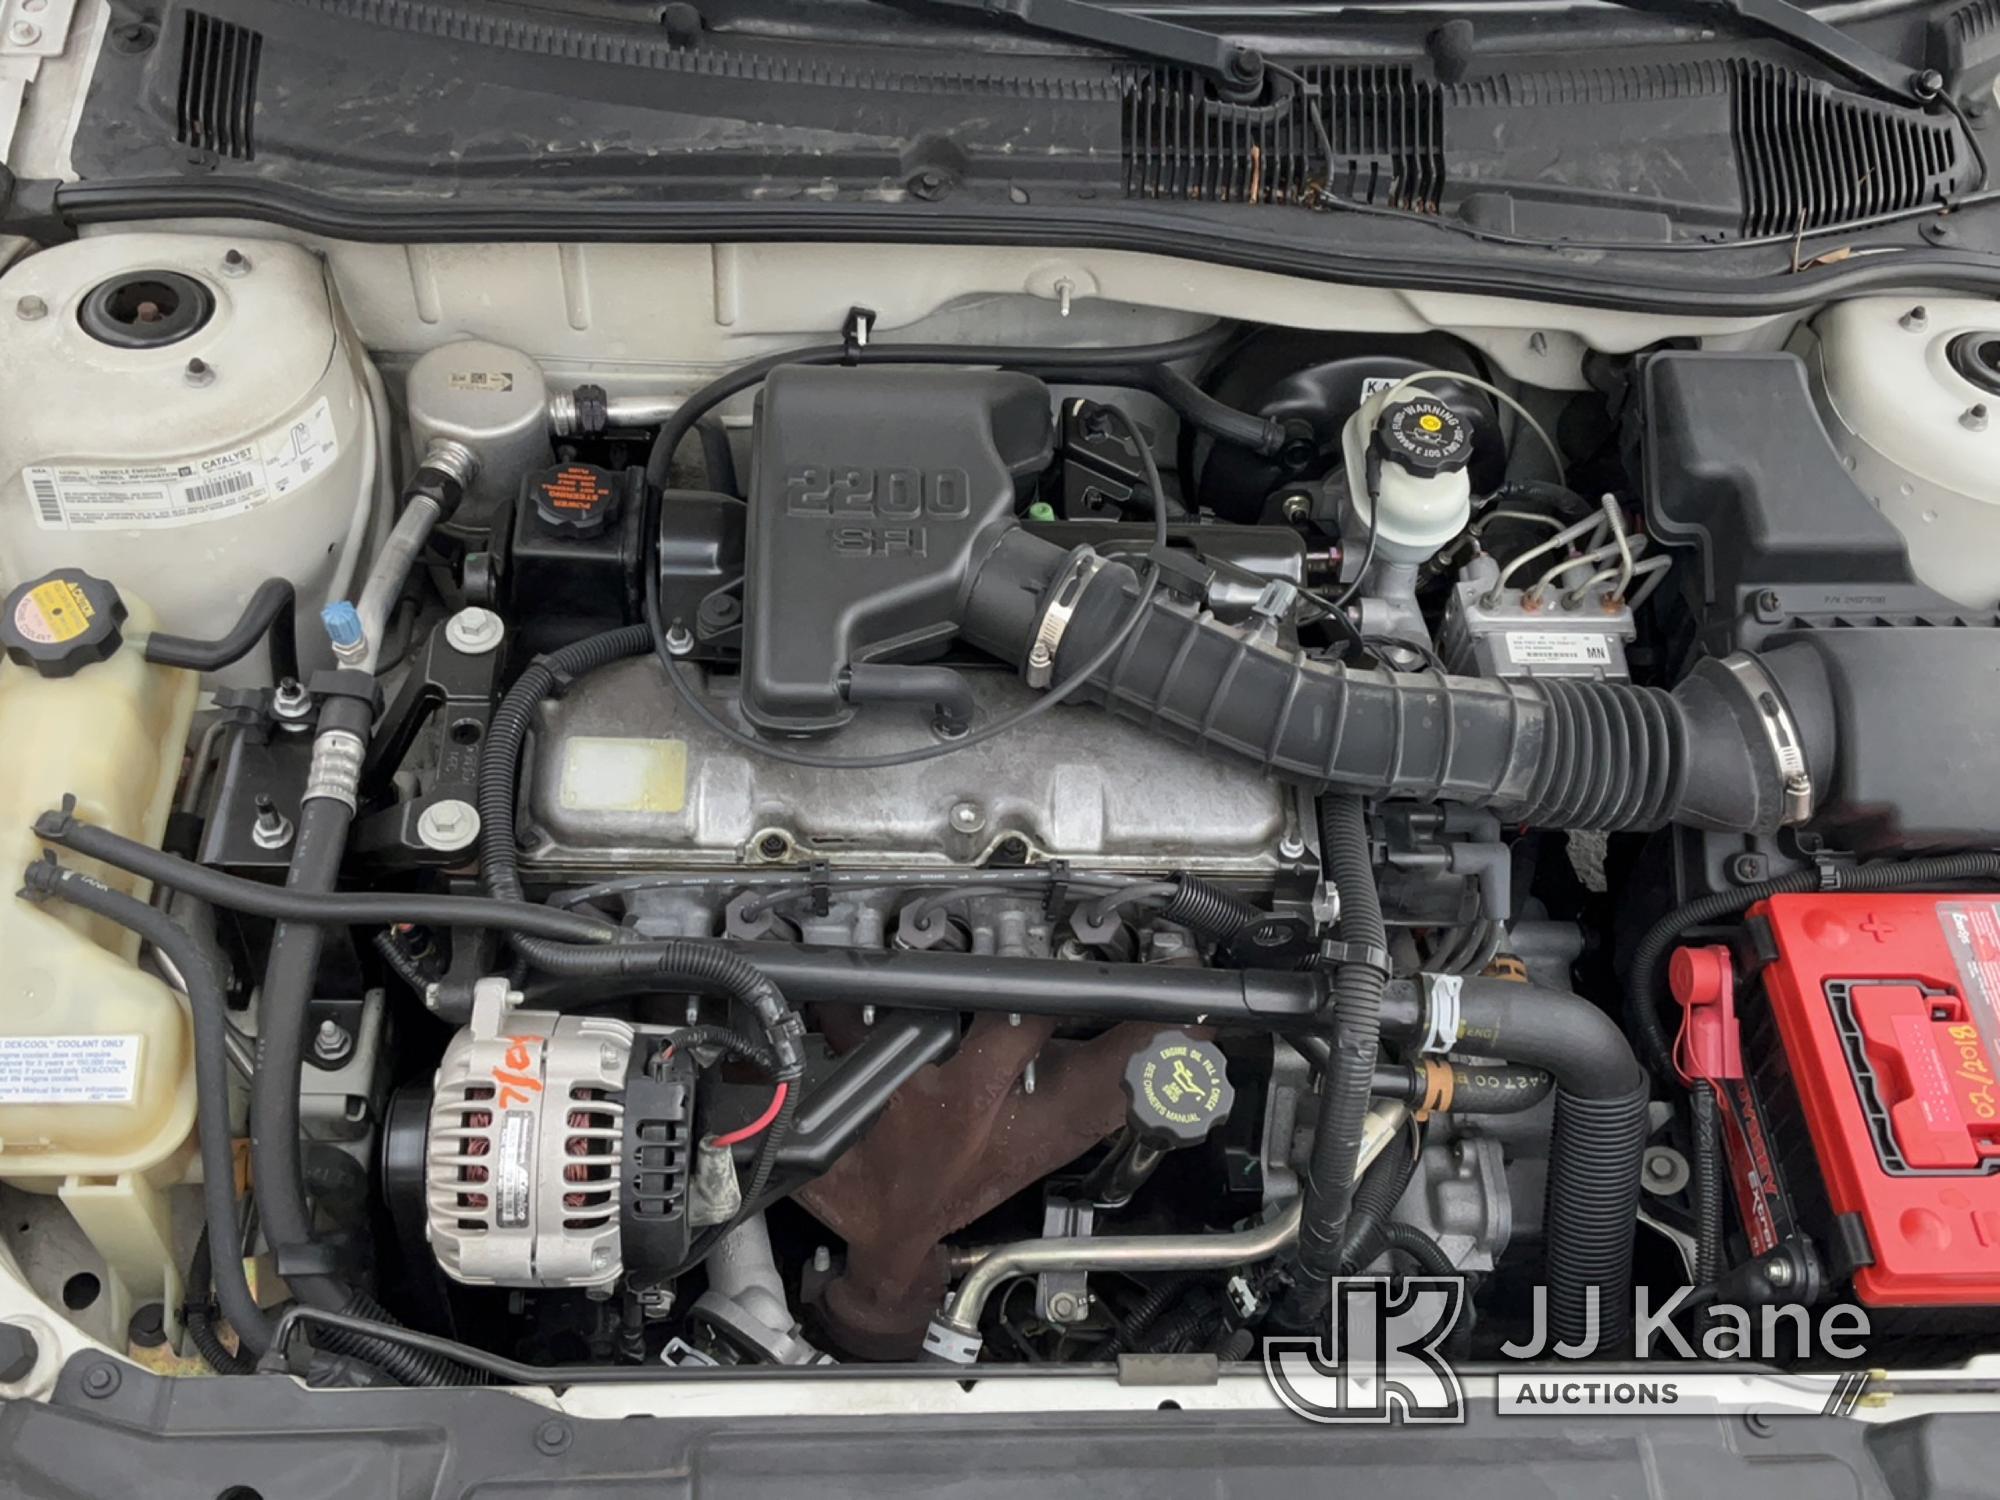 (Jurupa Valley, CA) 2001 Chevrolet Cavalier 4-Door Sedan Runs & Moves,